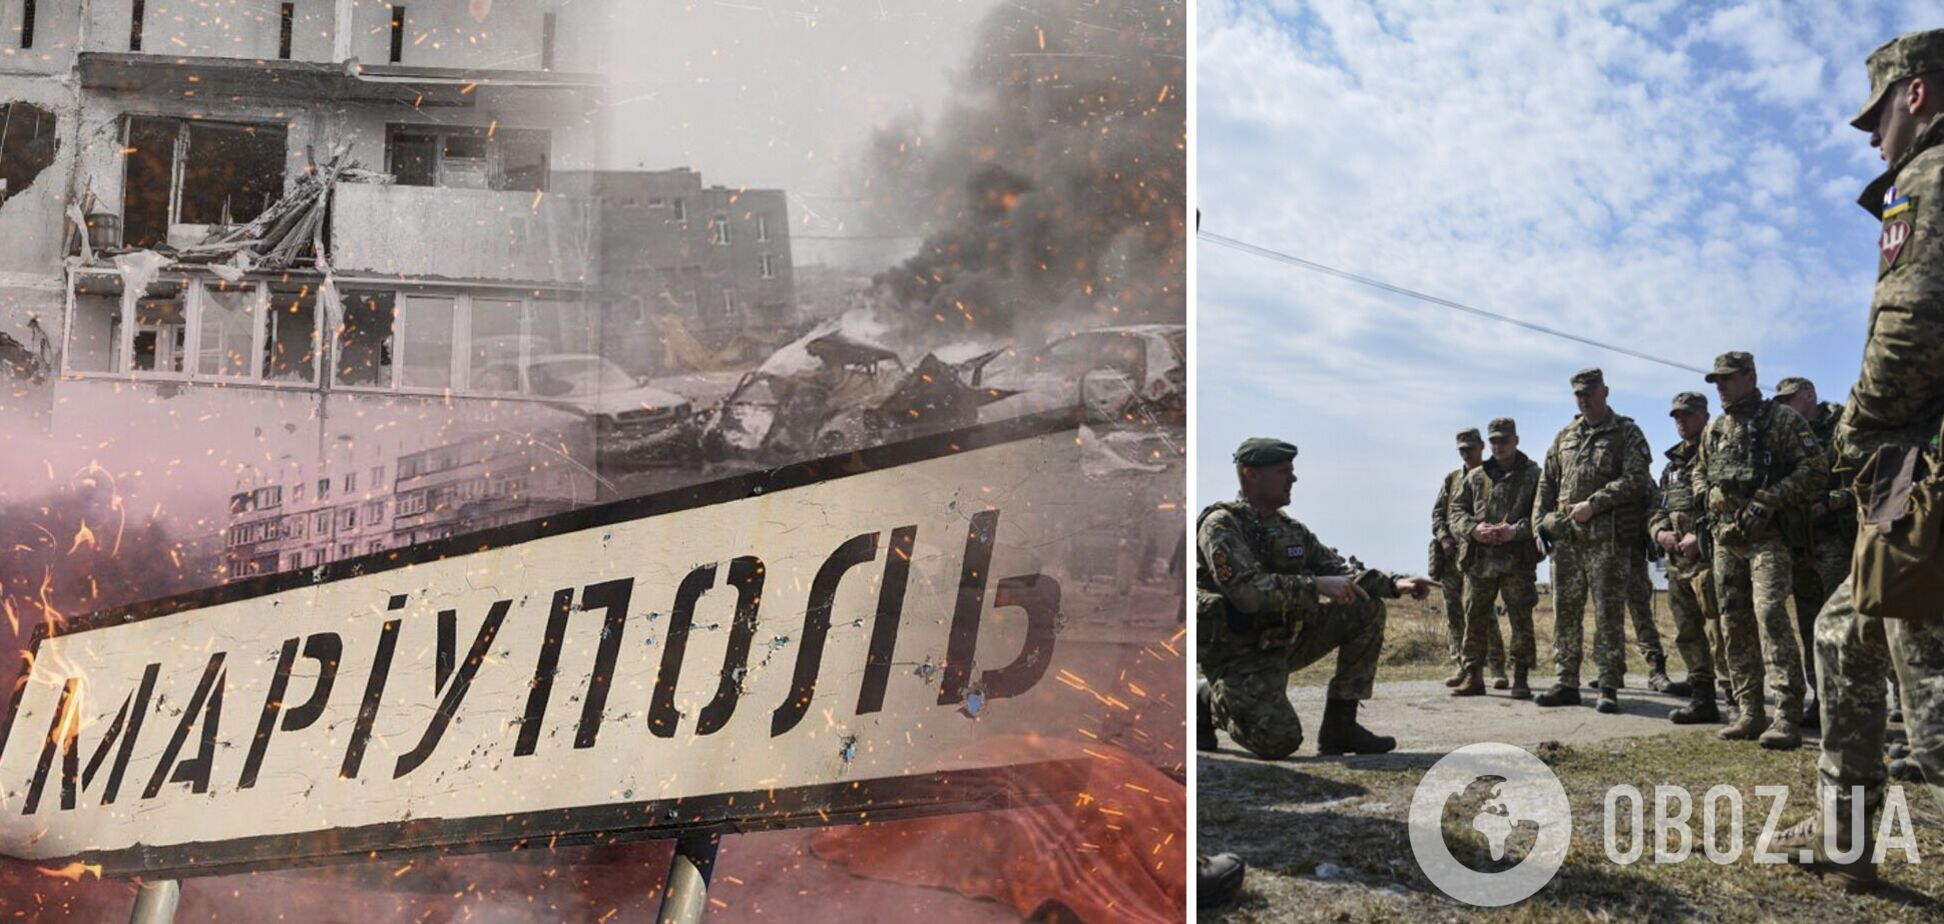 Попытка была: СМИ узнали, почему украинским военным не удалось деблокировать 'Азовсталь'